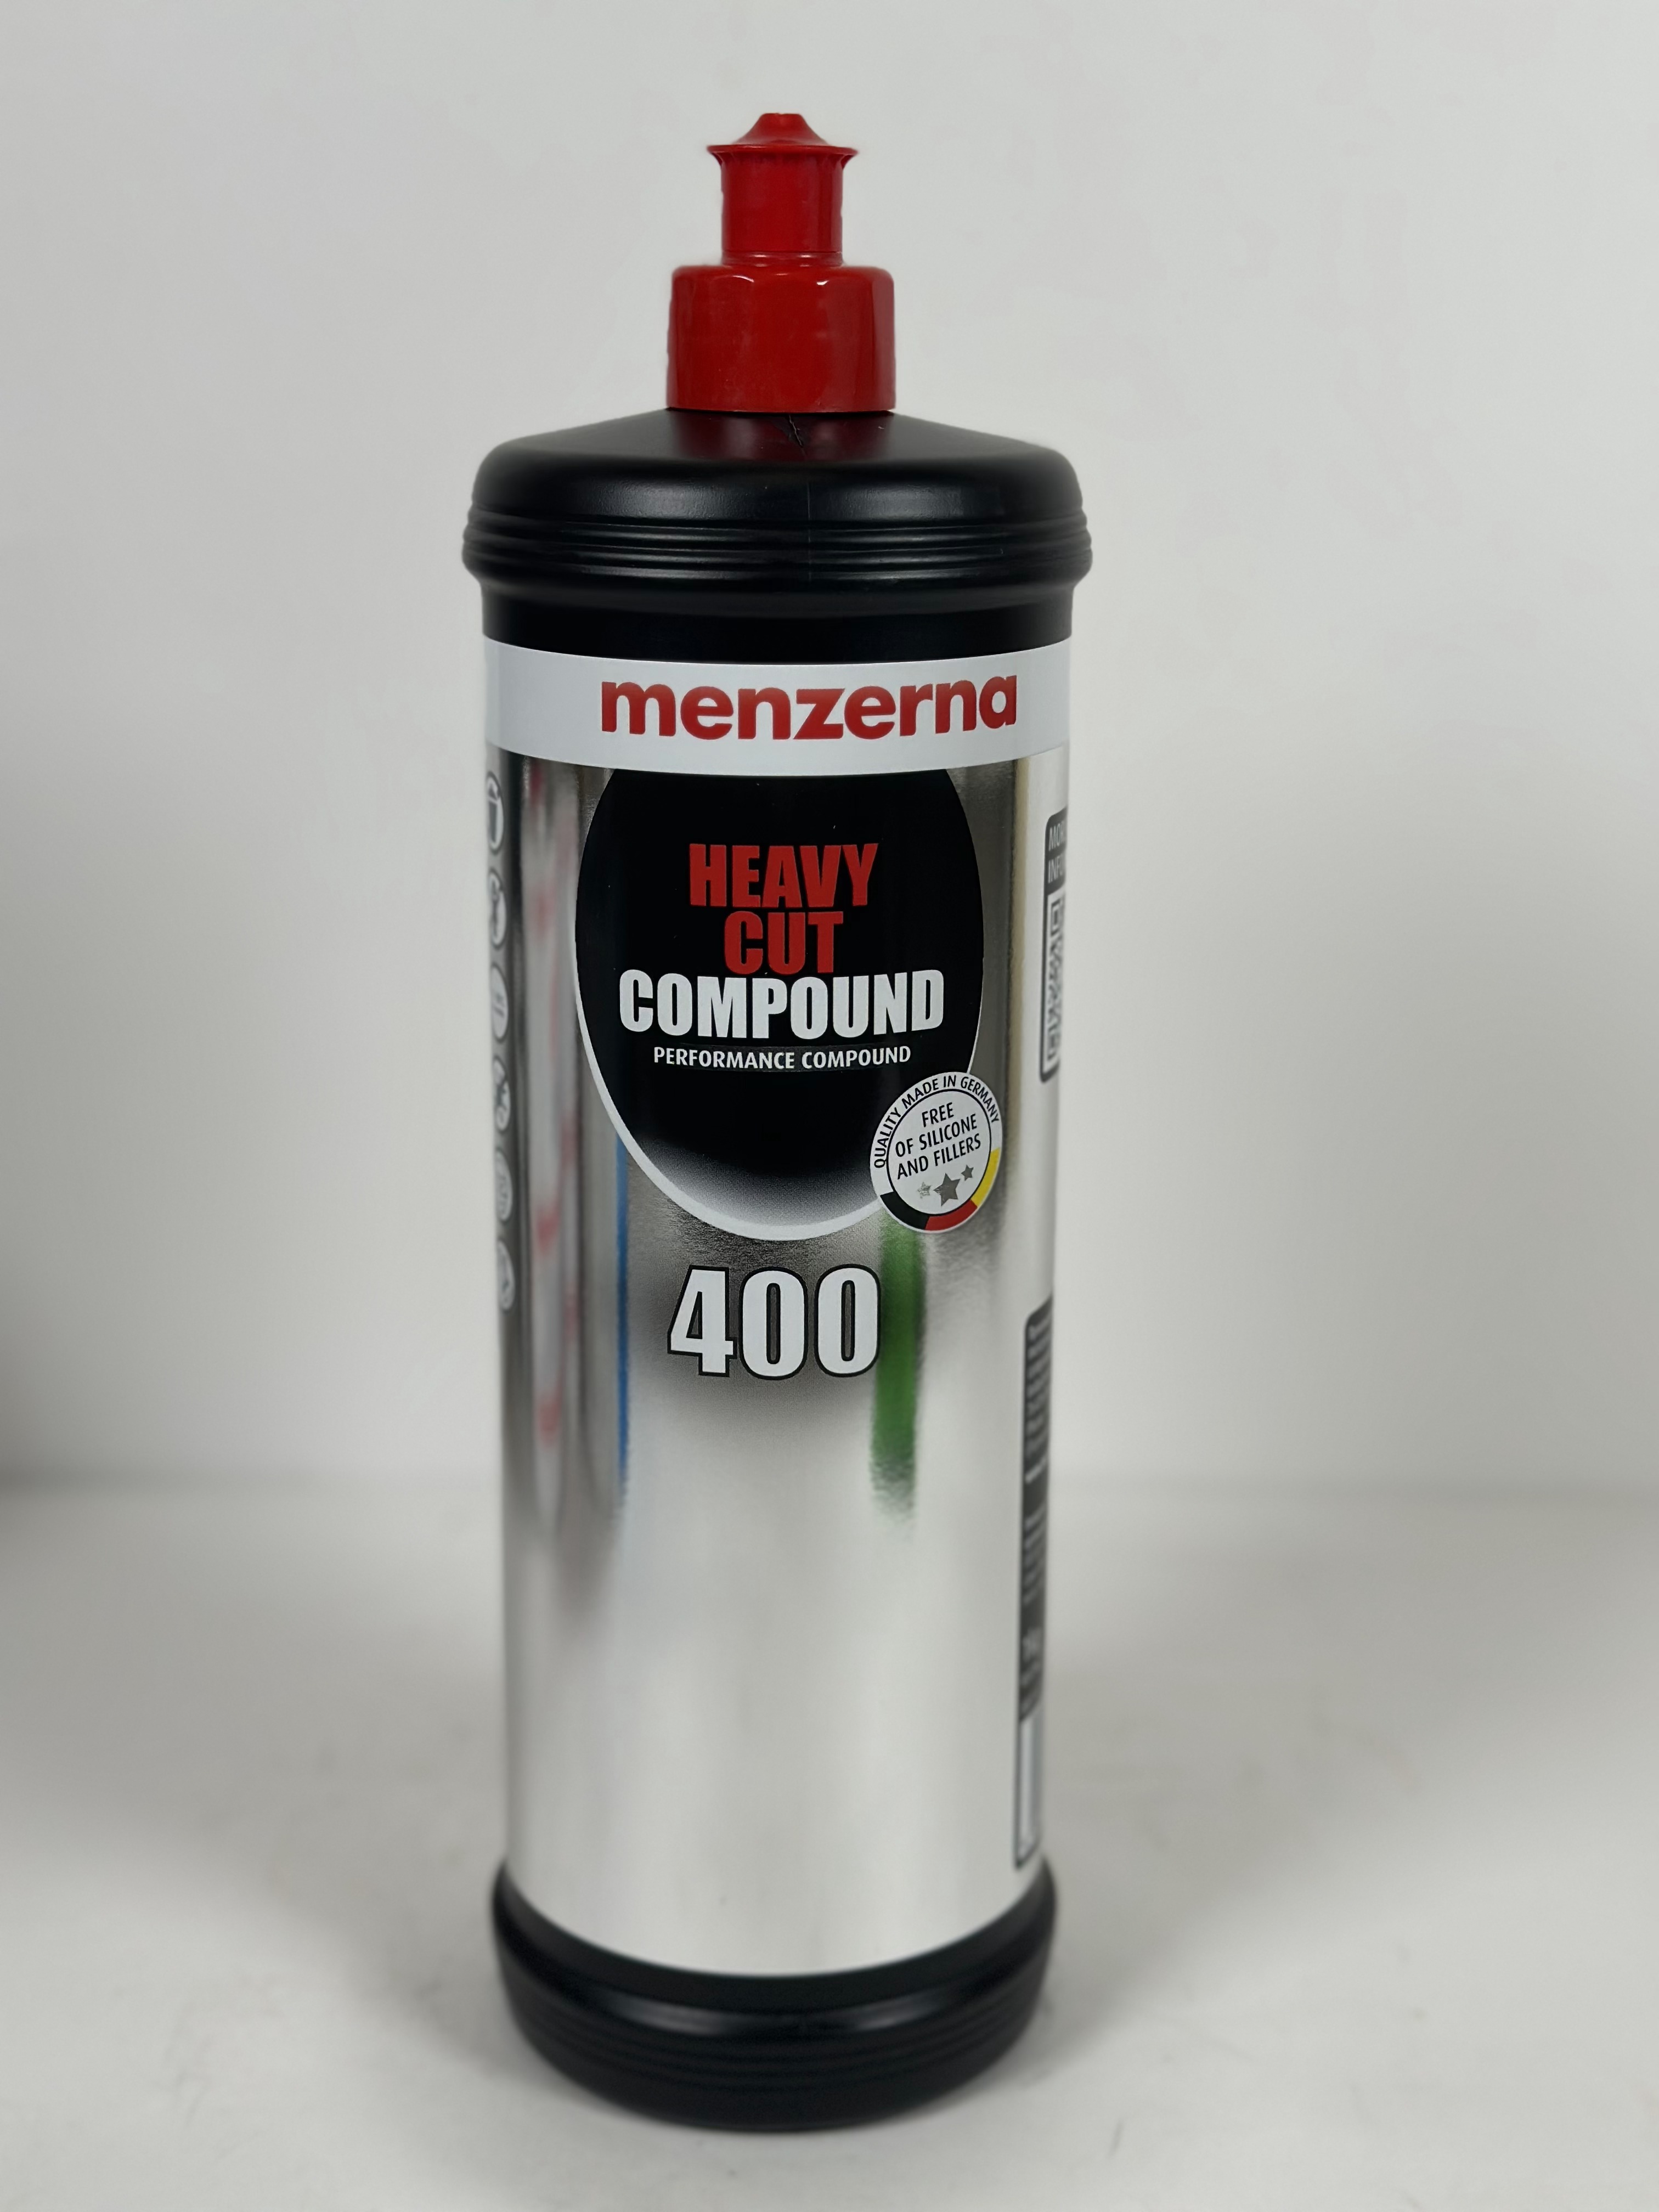 Menzerna Heavy Cut Compound 400  Универсальная высокоабразивная полировальная паста. Улучшенный состав 1,0кг